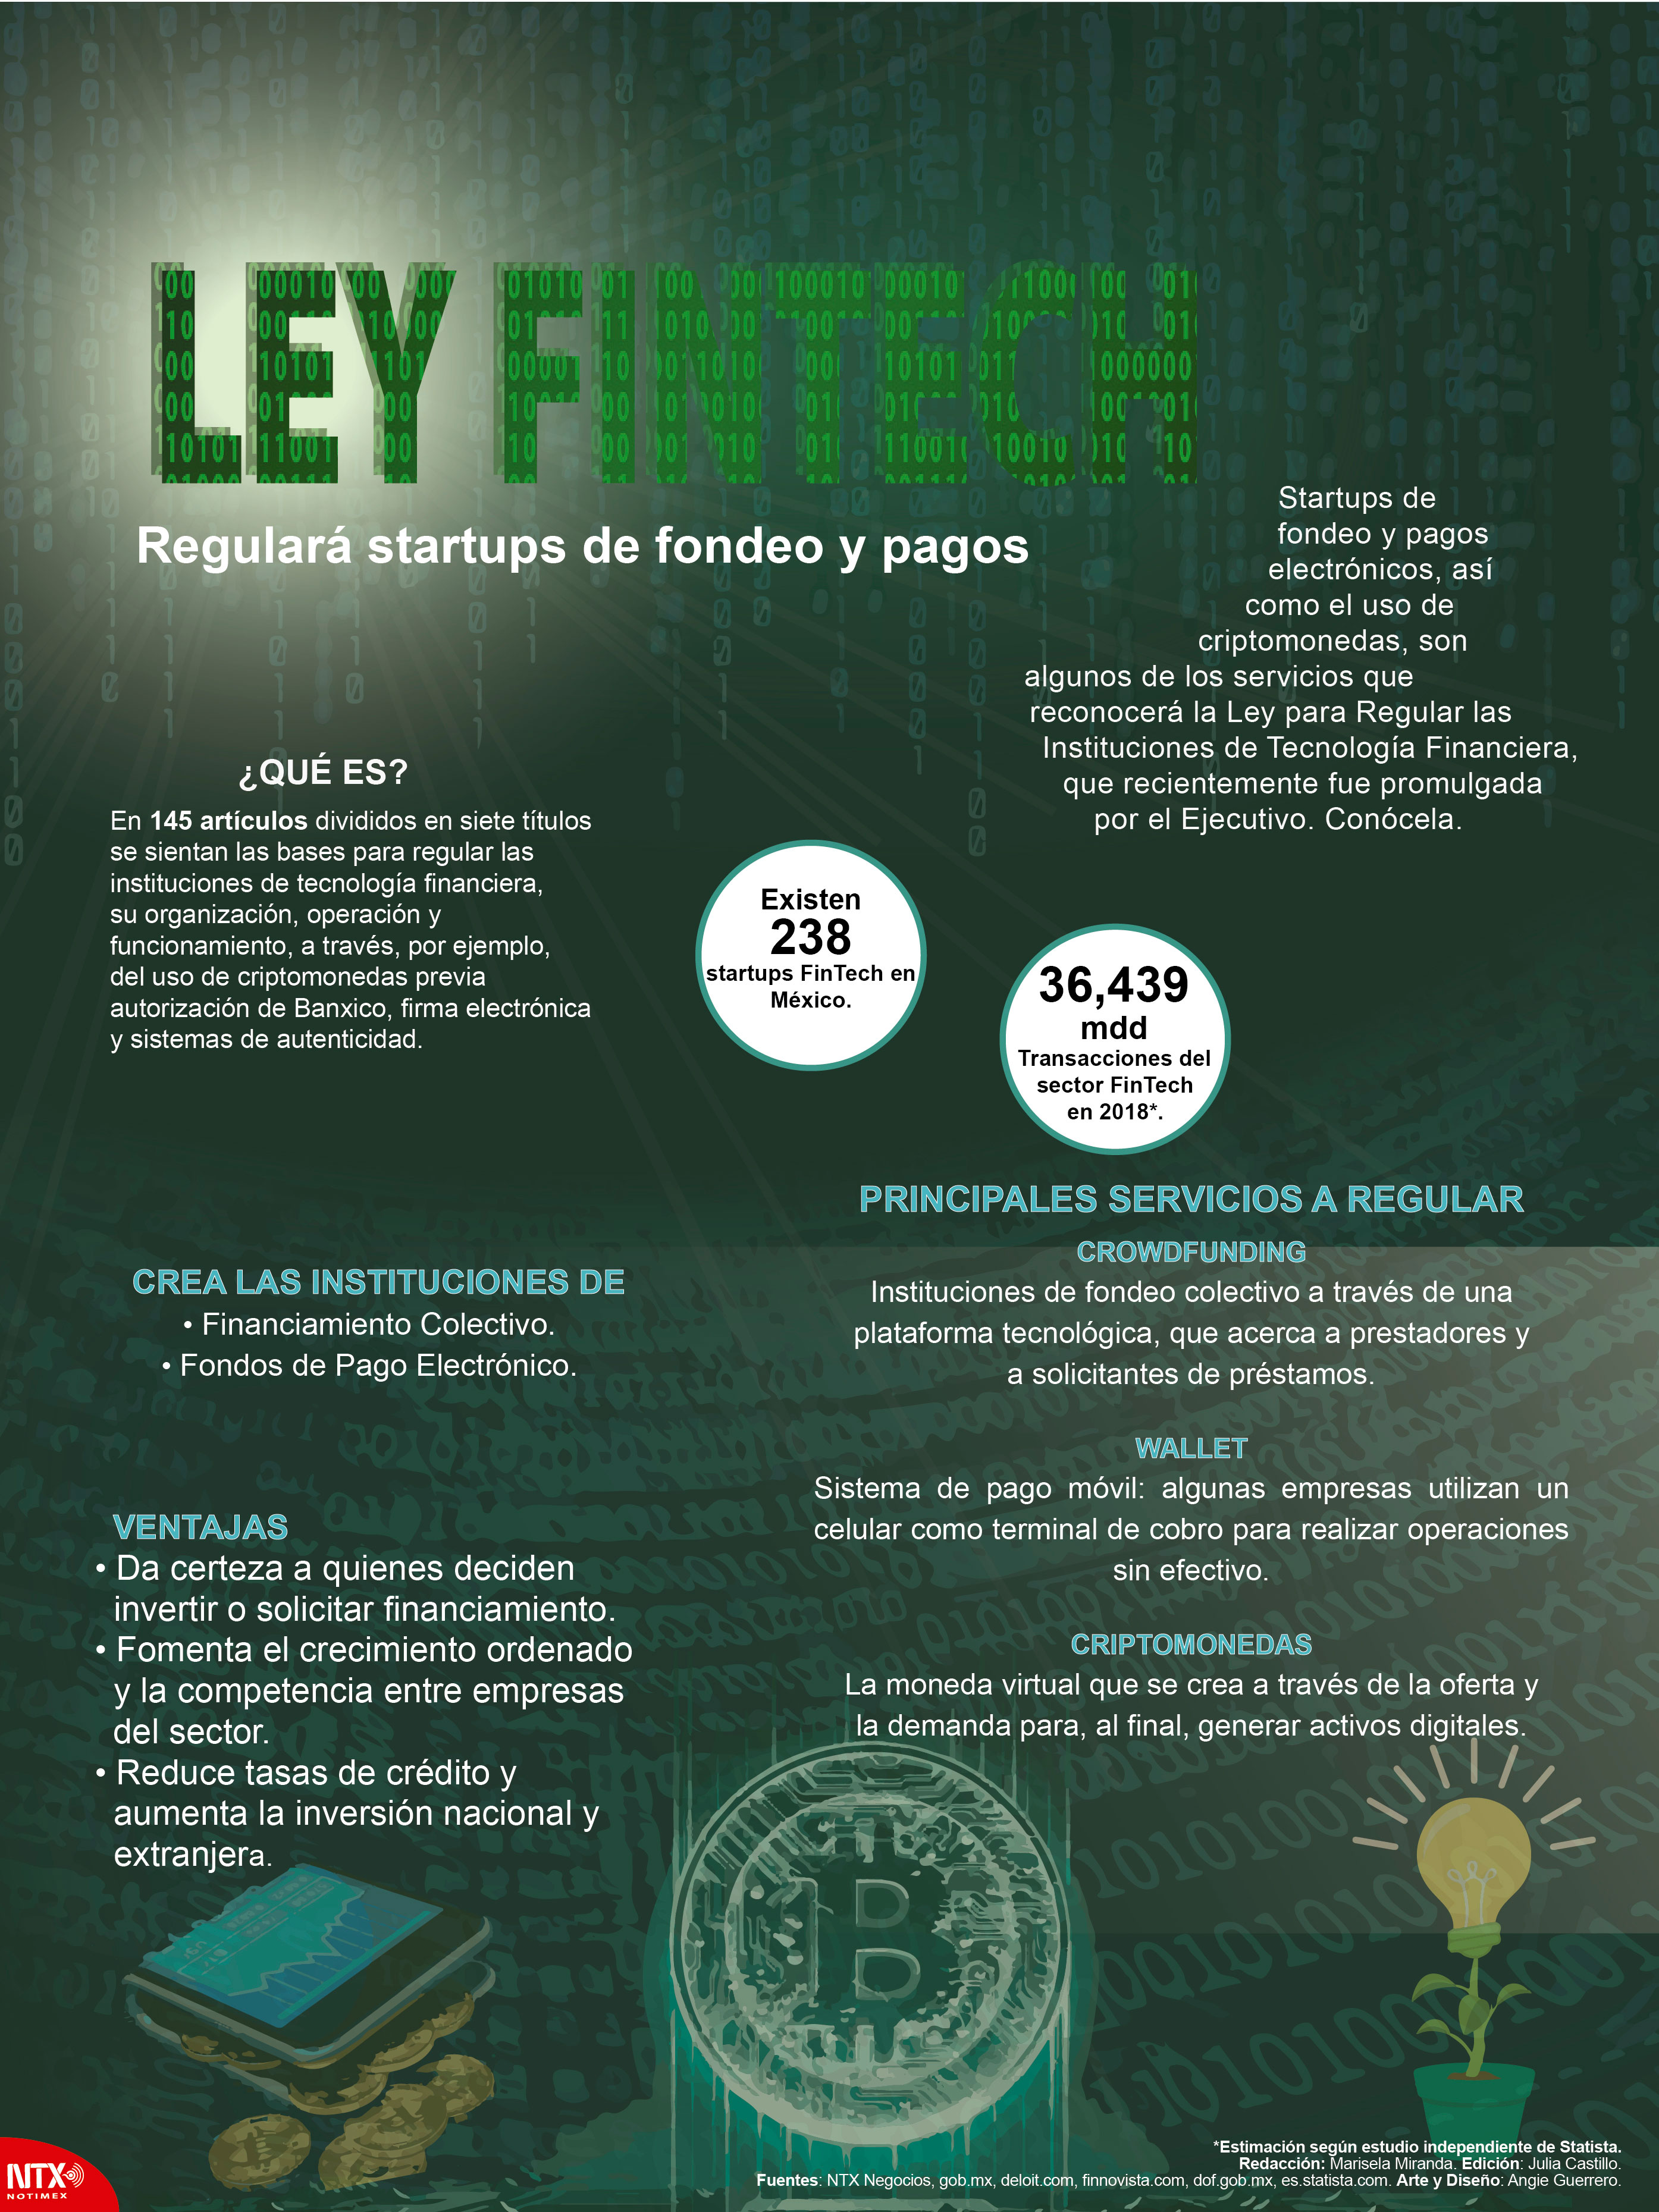 Ley Fintech regular startups de fondeo y pagos